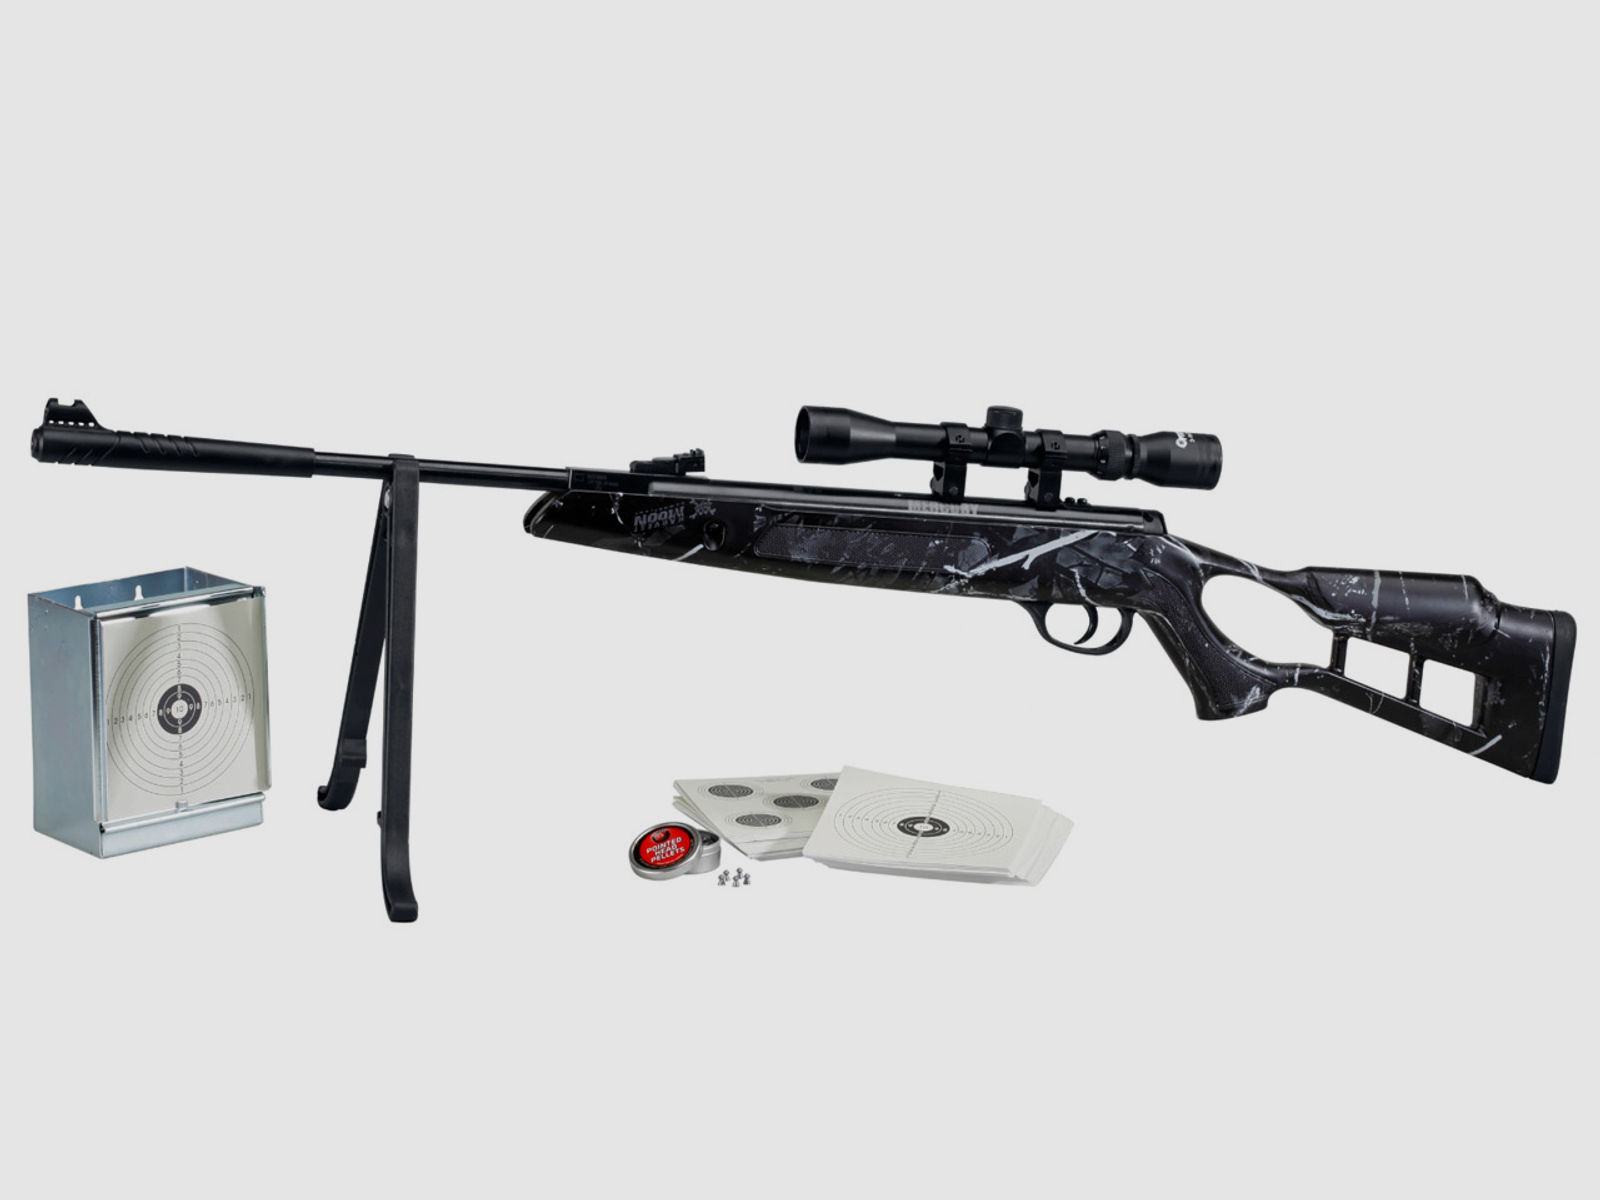 Knicklauf Luftgewehr Mercury Chili Camo Sonderset mit Zielfernrohr 3-9x32 Kaliber 4,5 mm (P18)